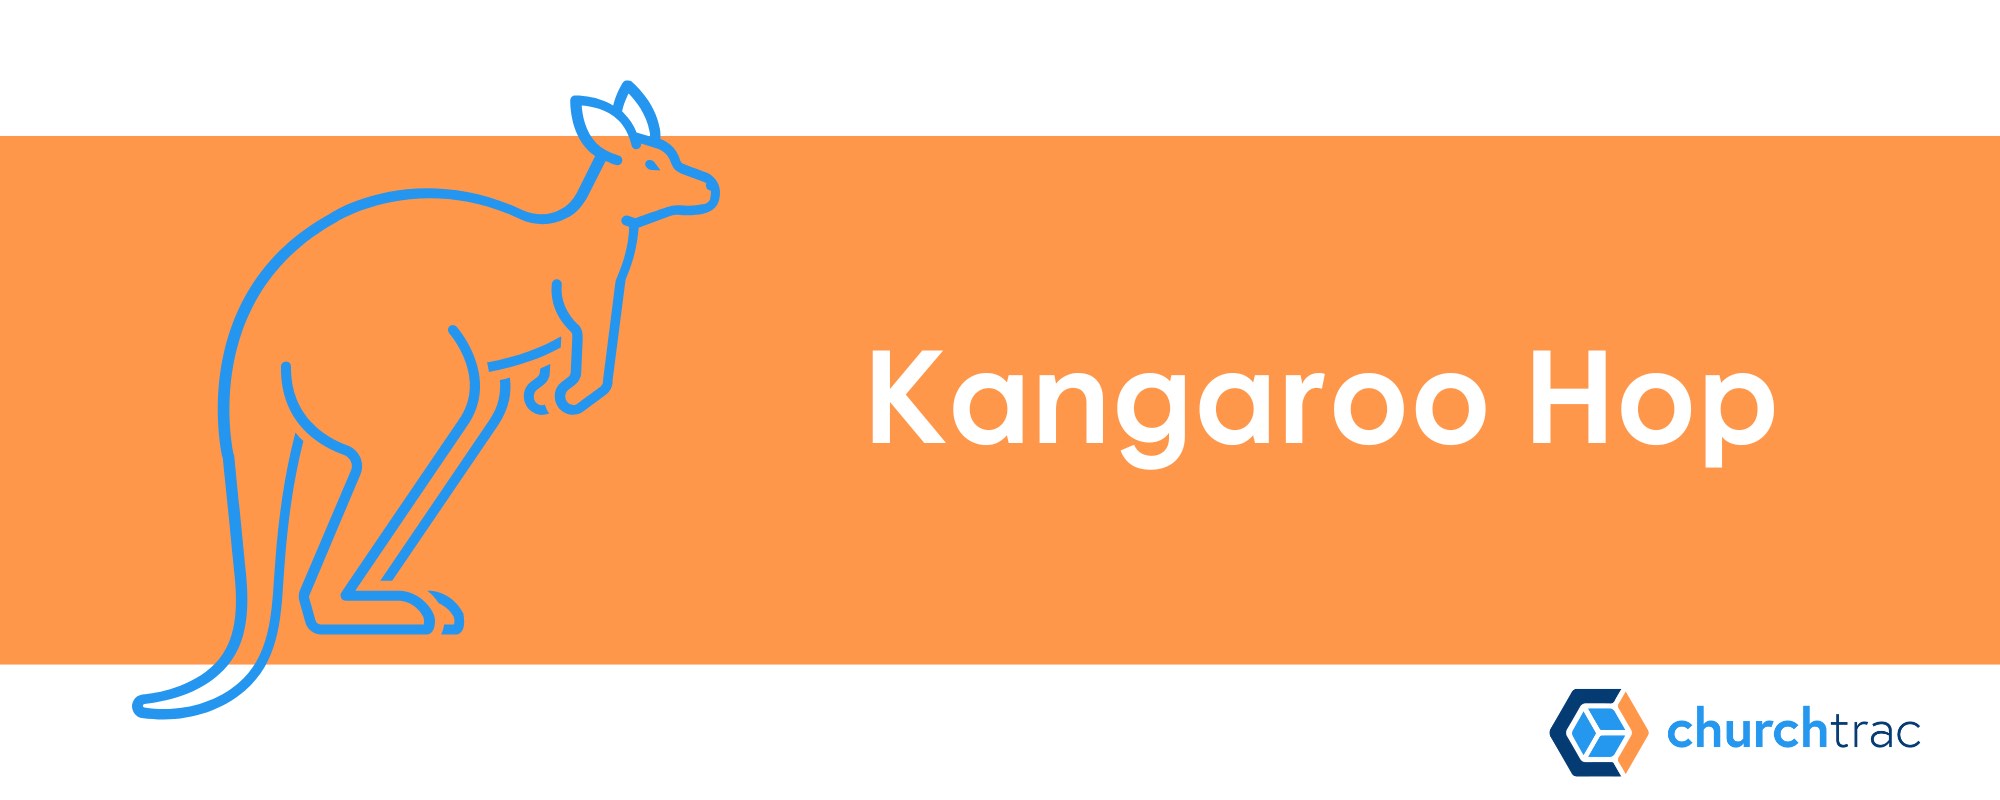 Kangaroo Hop is a great VBS Indoor Game Idea